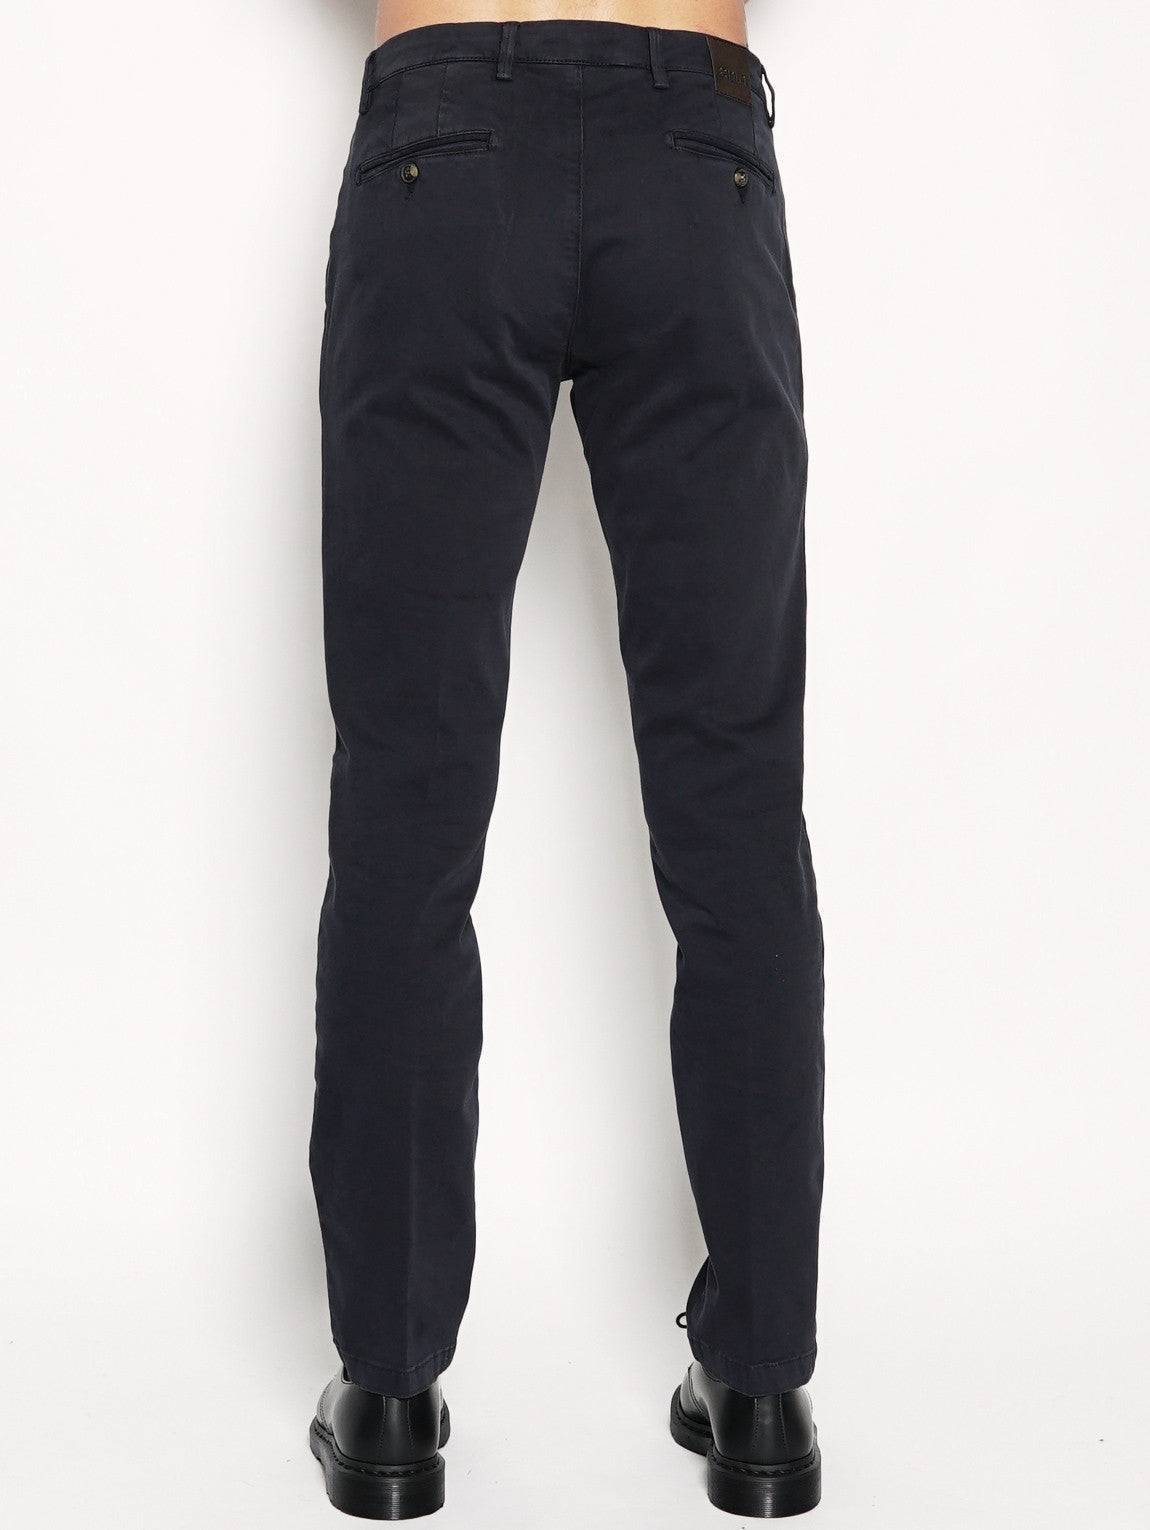 Pantaloni chinos casual - BG05 Blu-Pantaloni-Briglia 1949-TRYME Shop